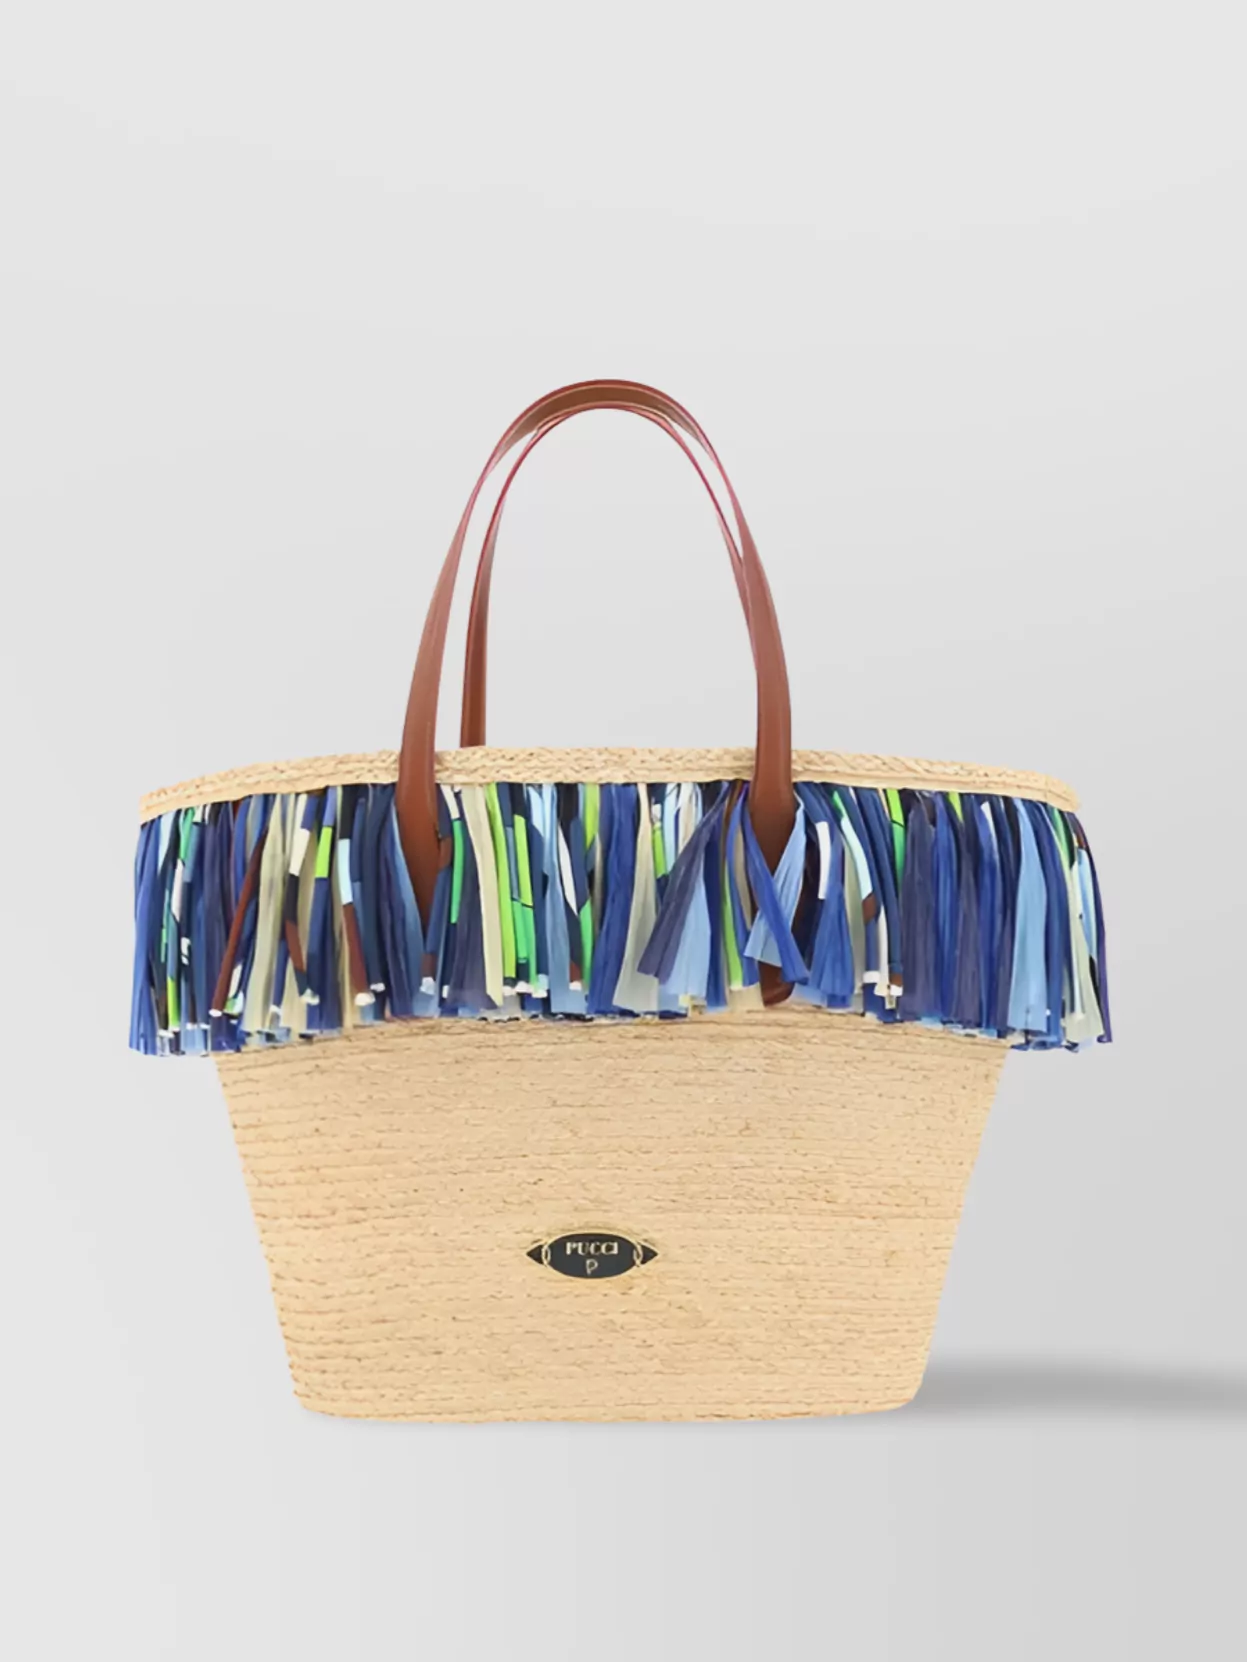 Pucci Raffia Woven Tote Bag In Blue